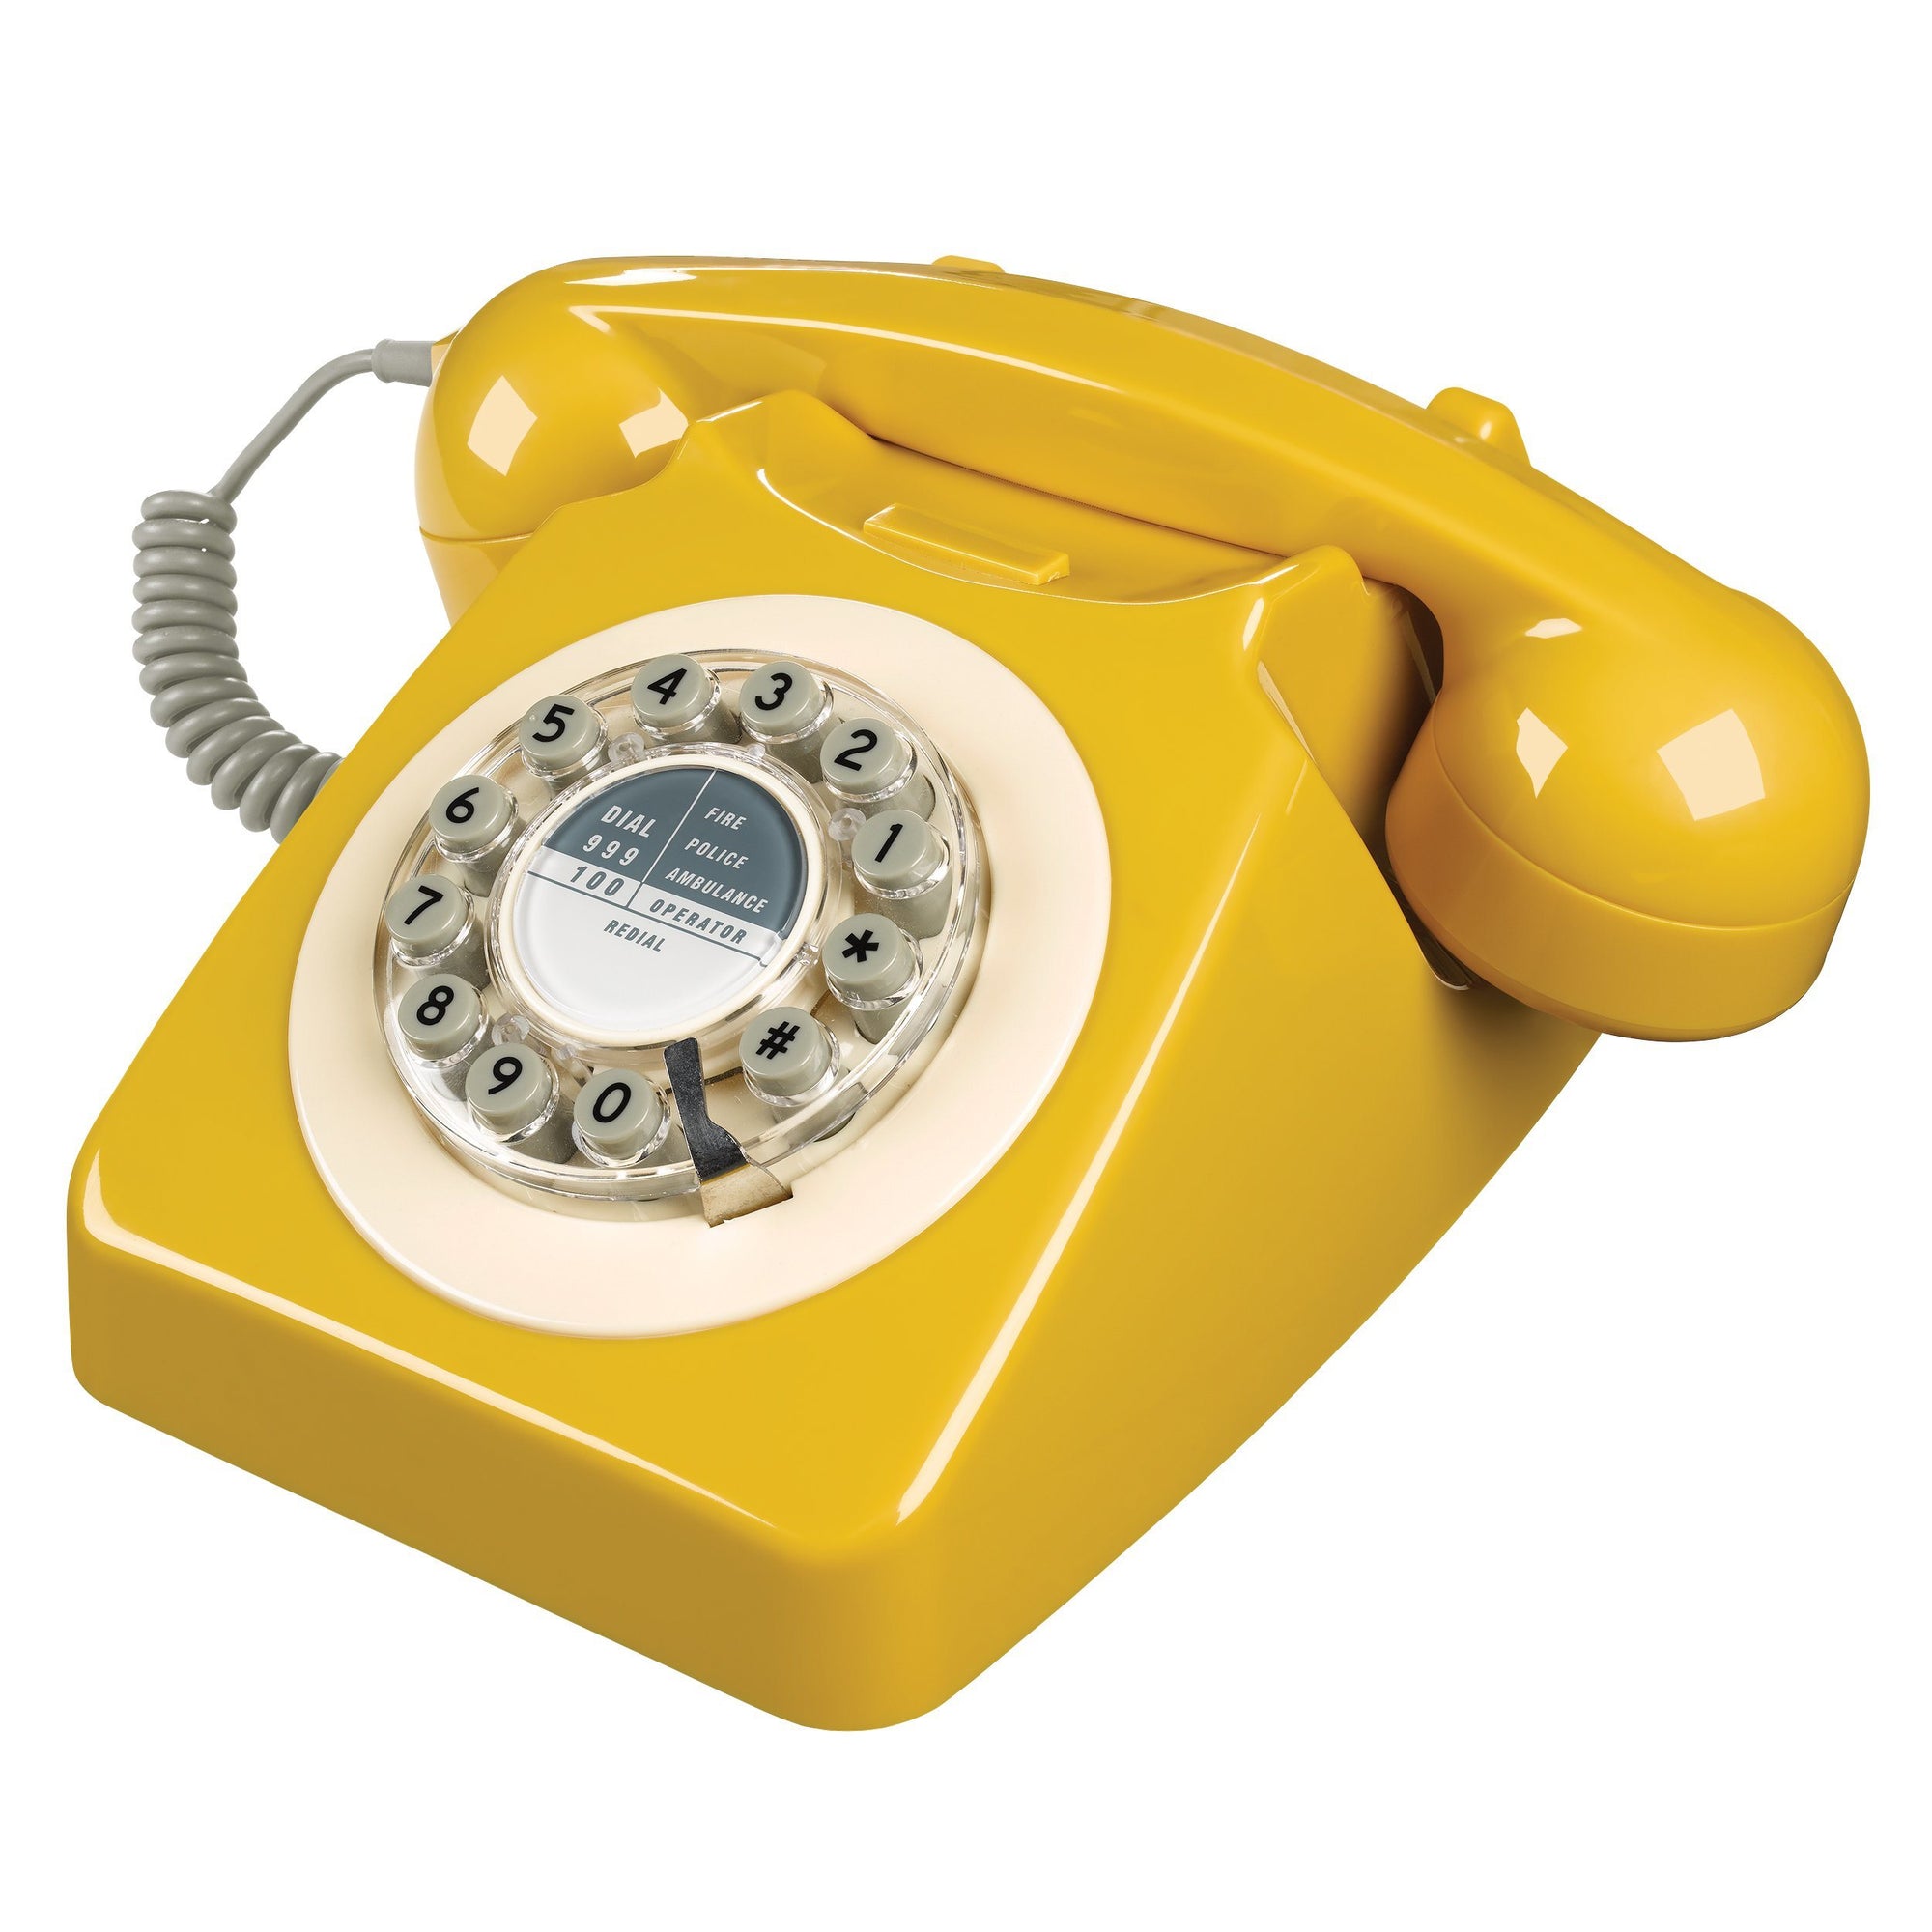 English Mustard 746 Telephone Classic 1960's Design - BouChic 